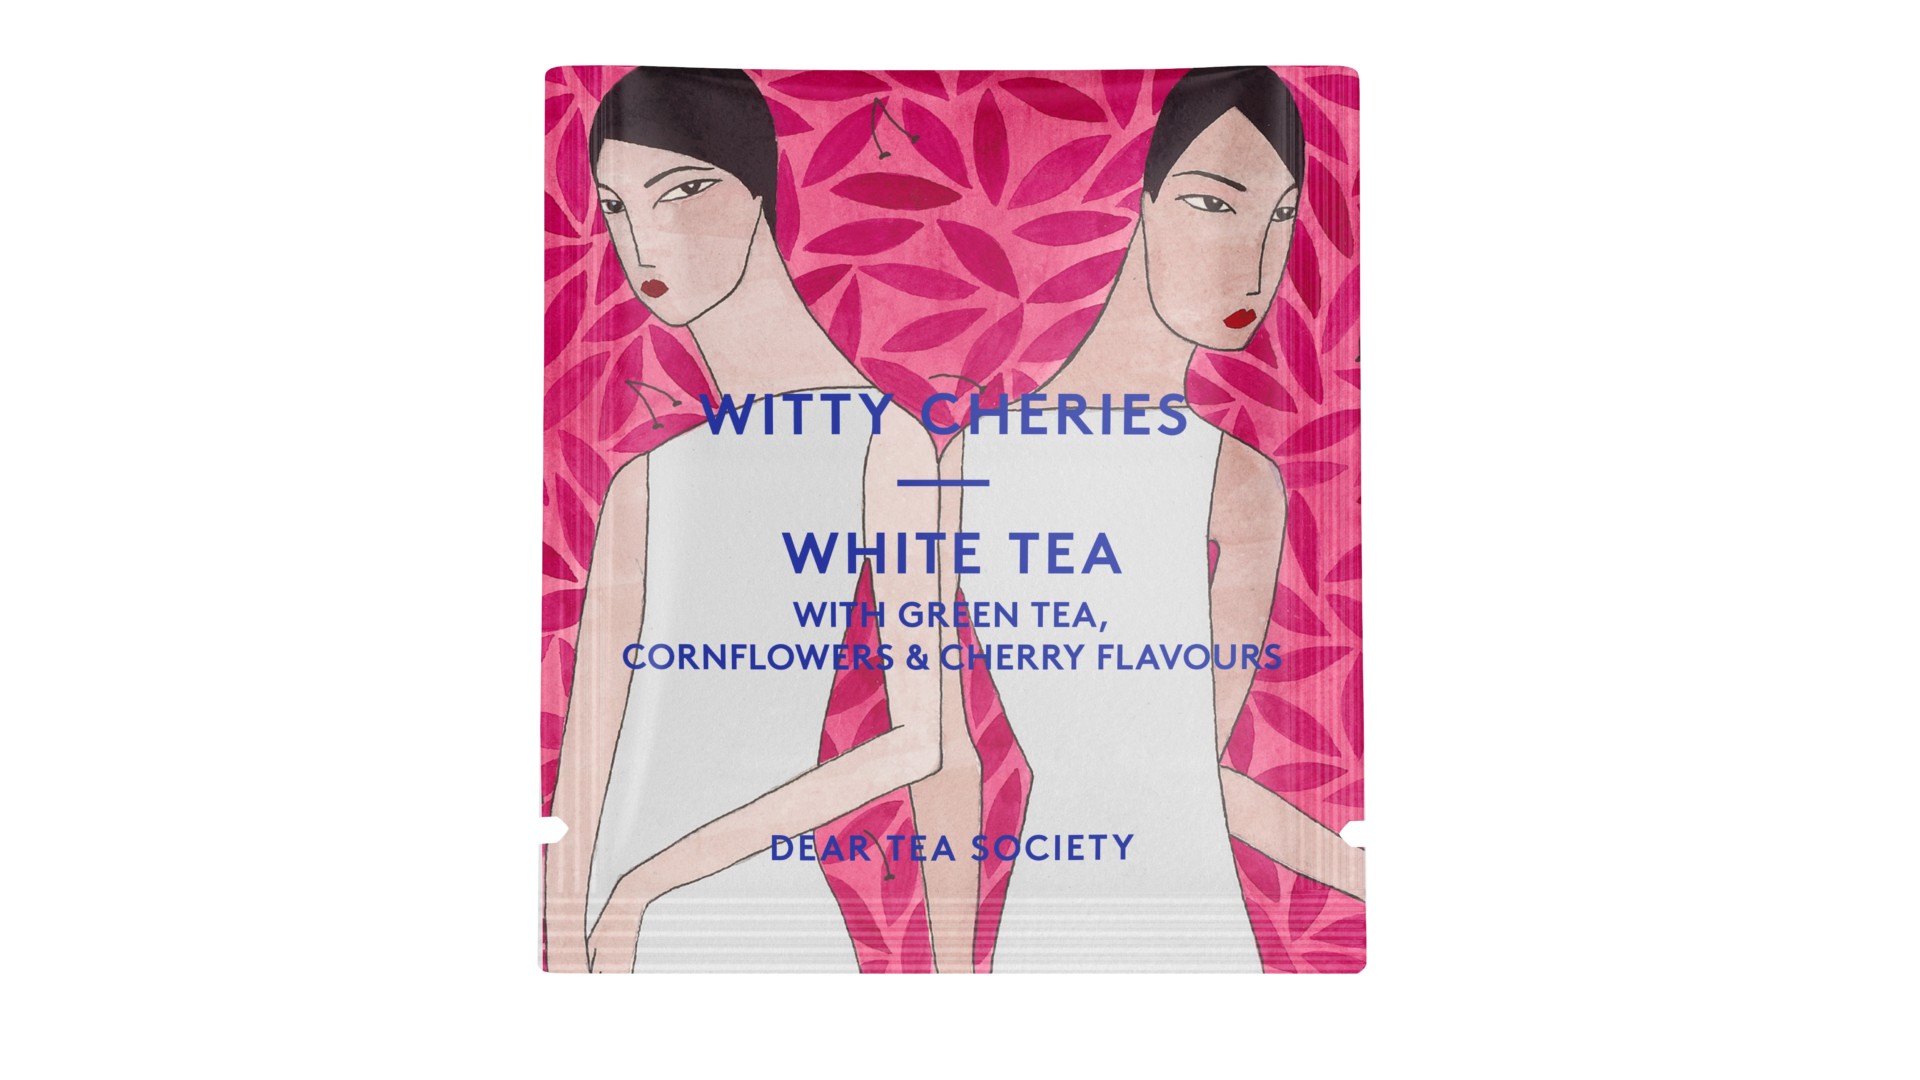 Dear_Tea_Society_Portion_Bag_Witty-Cheries